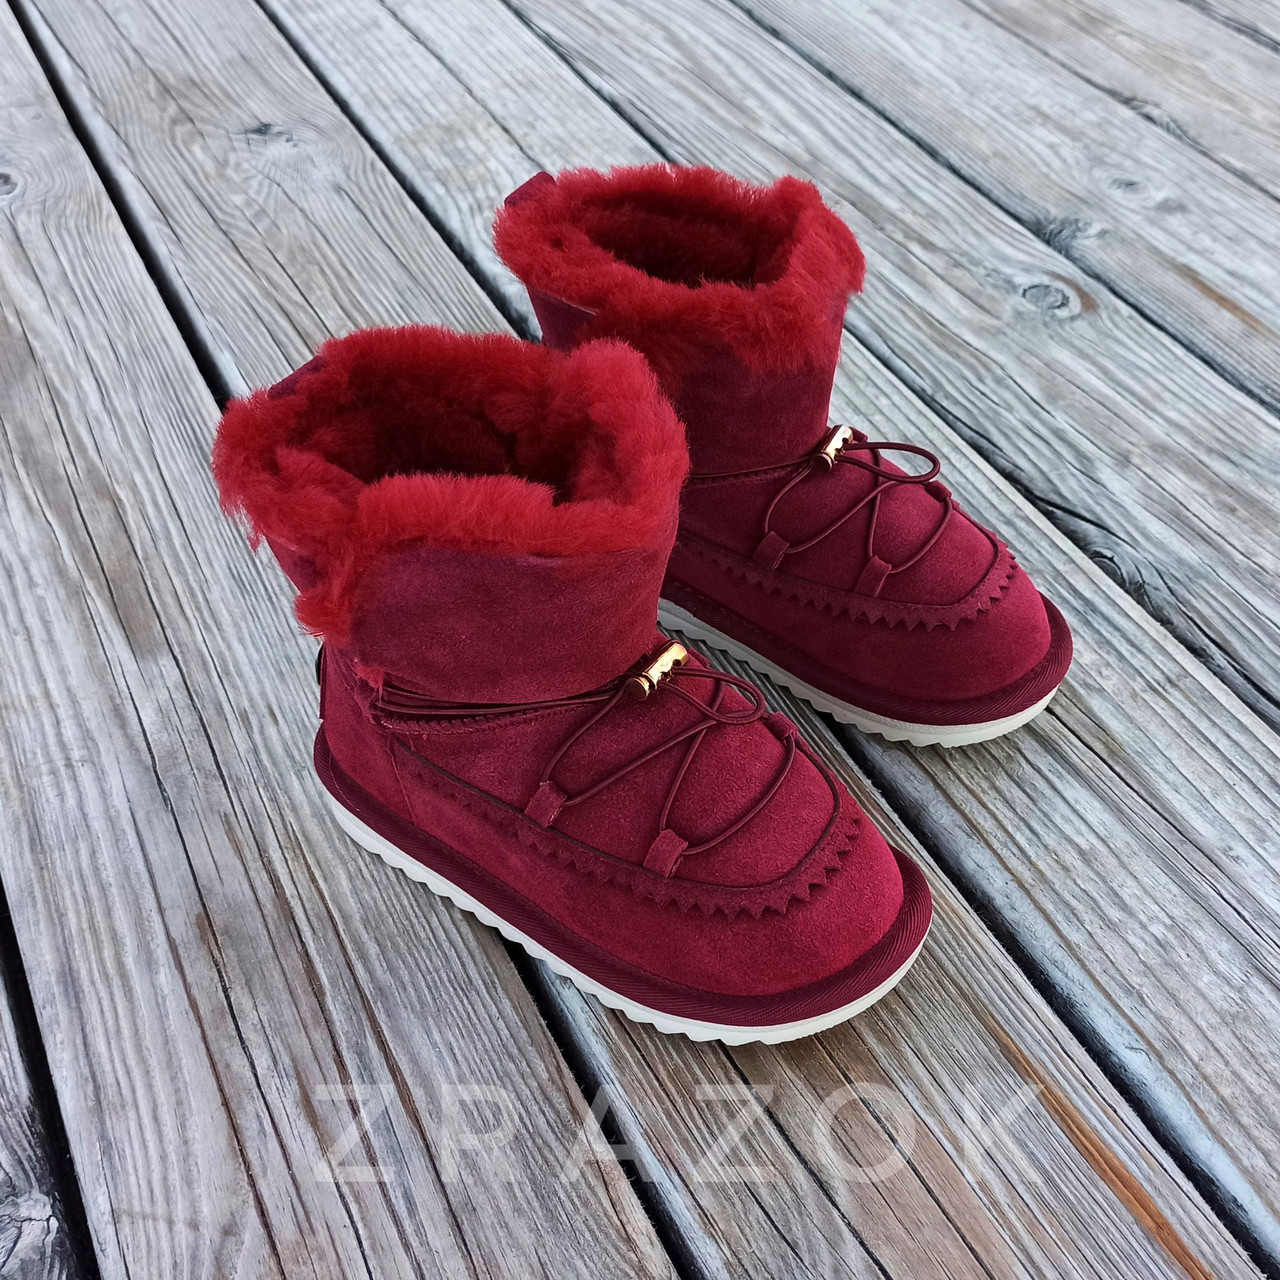 Натуральна замша натуральне хутро уггі дитячі бордо червоні, бордові черевики уггі дитячі для дівчинки